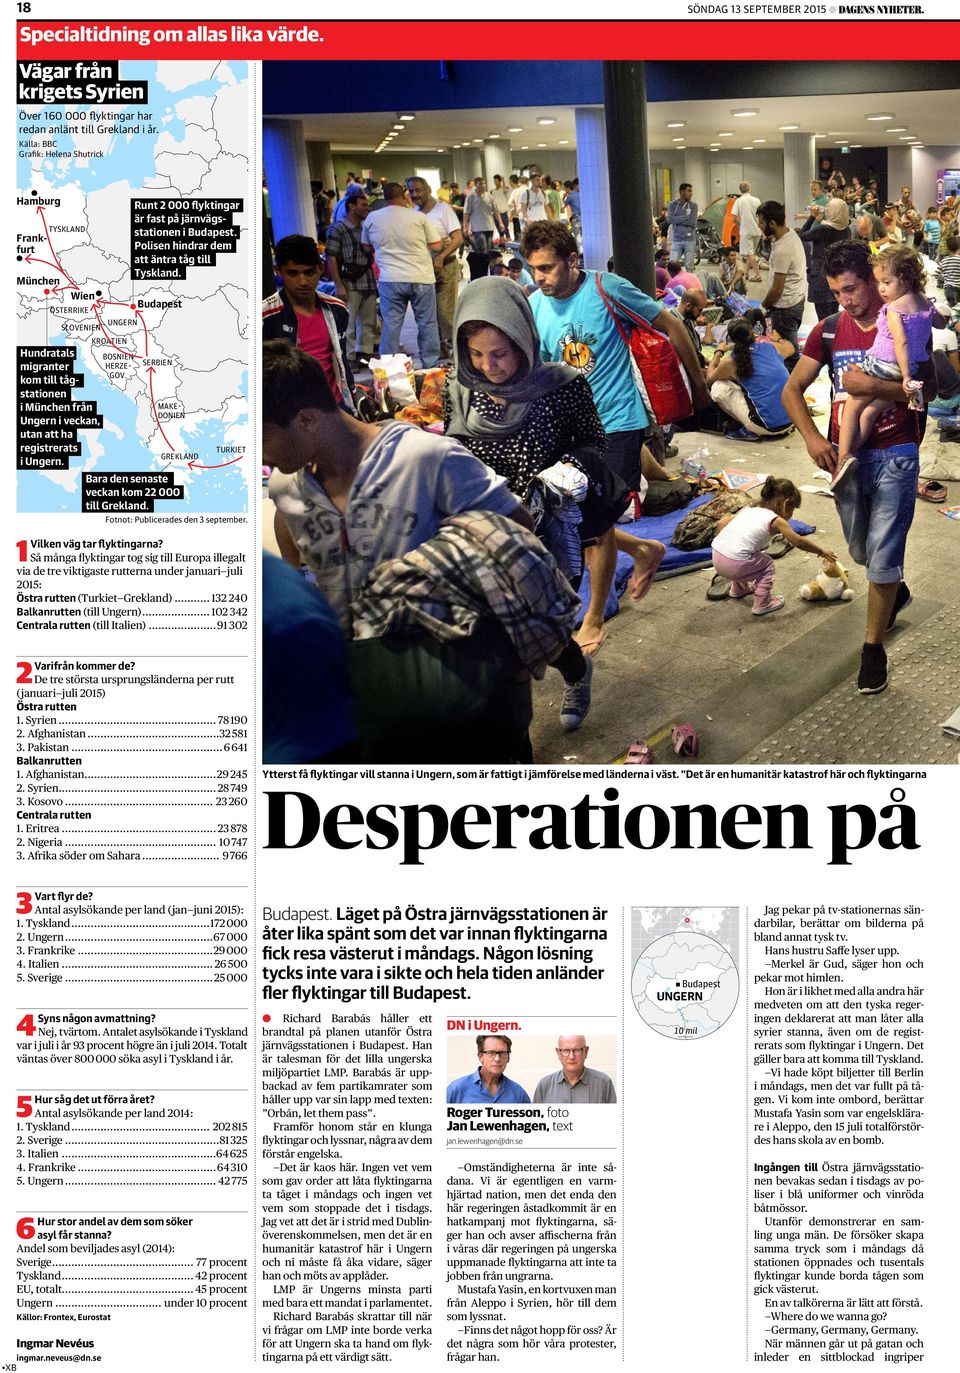 kom till tågstationen i München från Ungern i veckan, utan att ha registrerats i Ungern. Runt 2 000 flyktingar är fast på järnvägsstationen i Budapest. Polisen hindrar dem att äntra tåg till Tyskland.